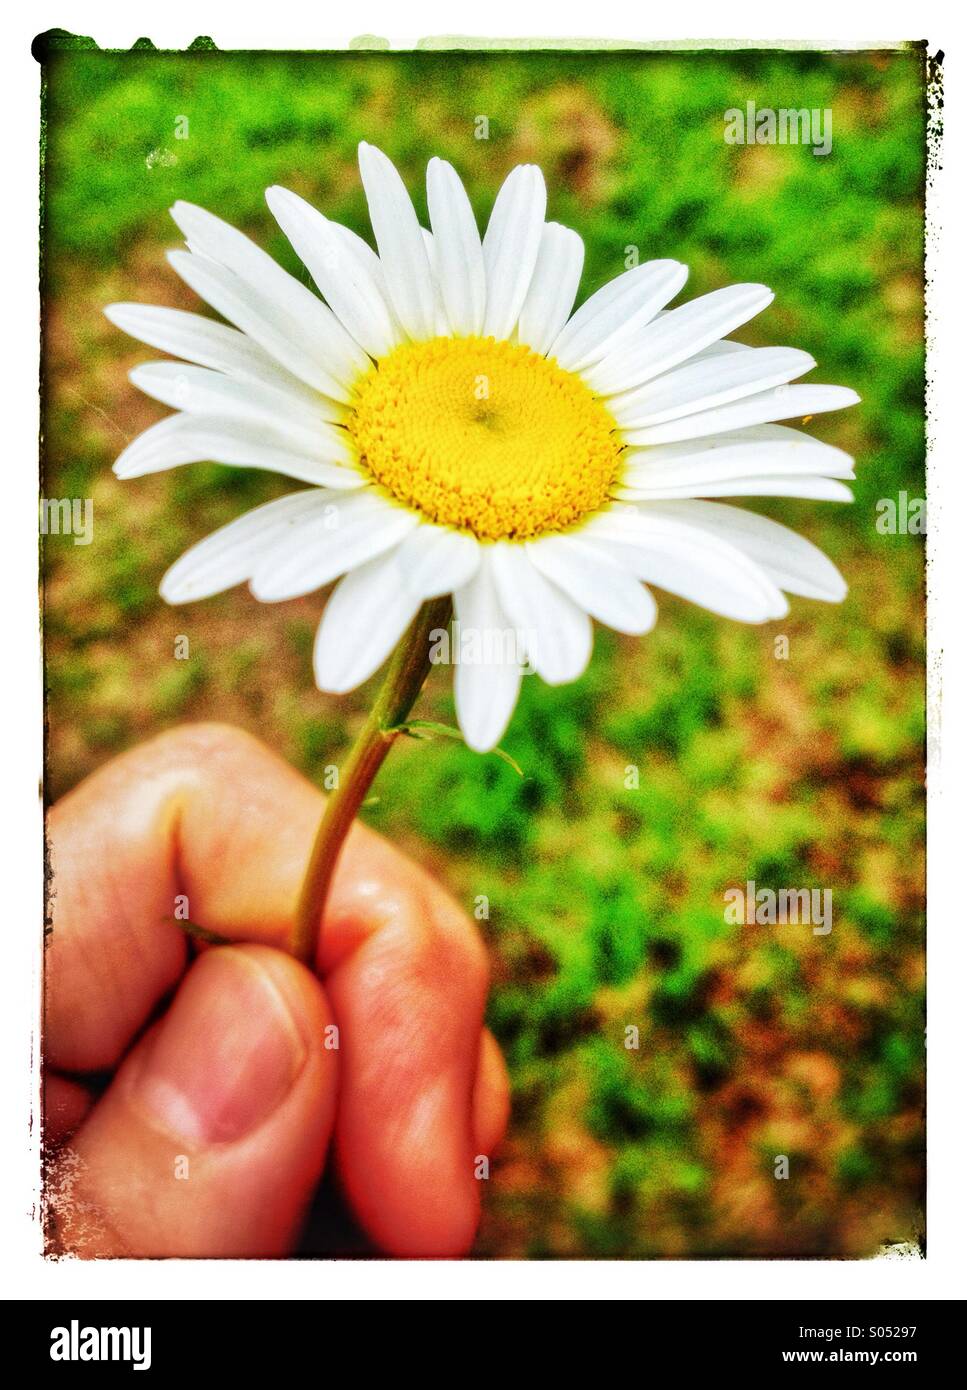 Man's hand holding white daisy avec centre jaune Banque D'Images